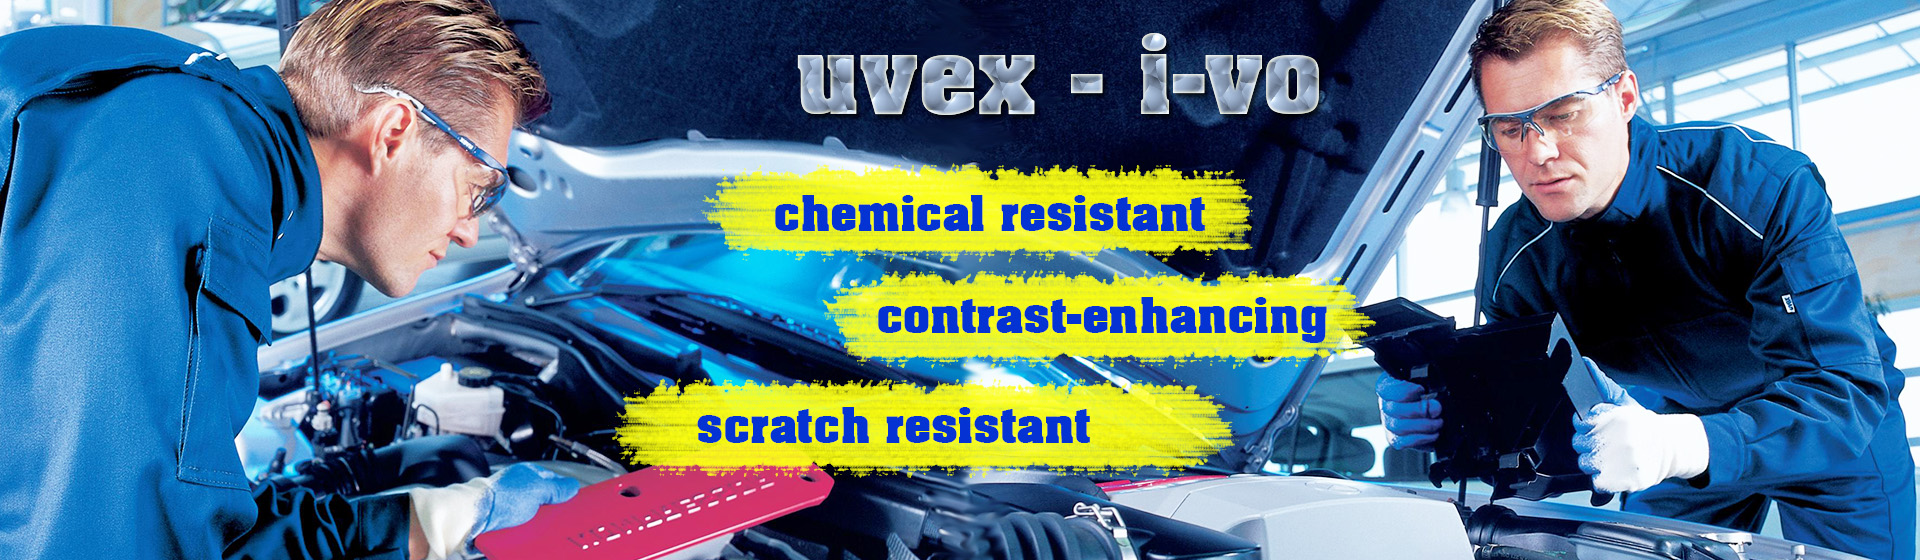 Uvex3